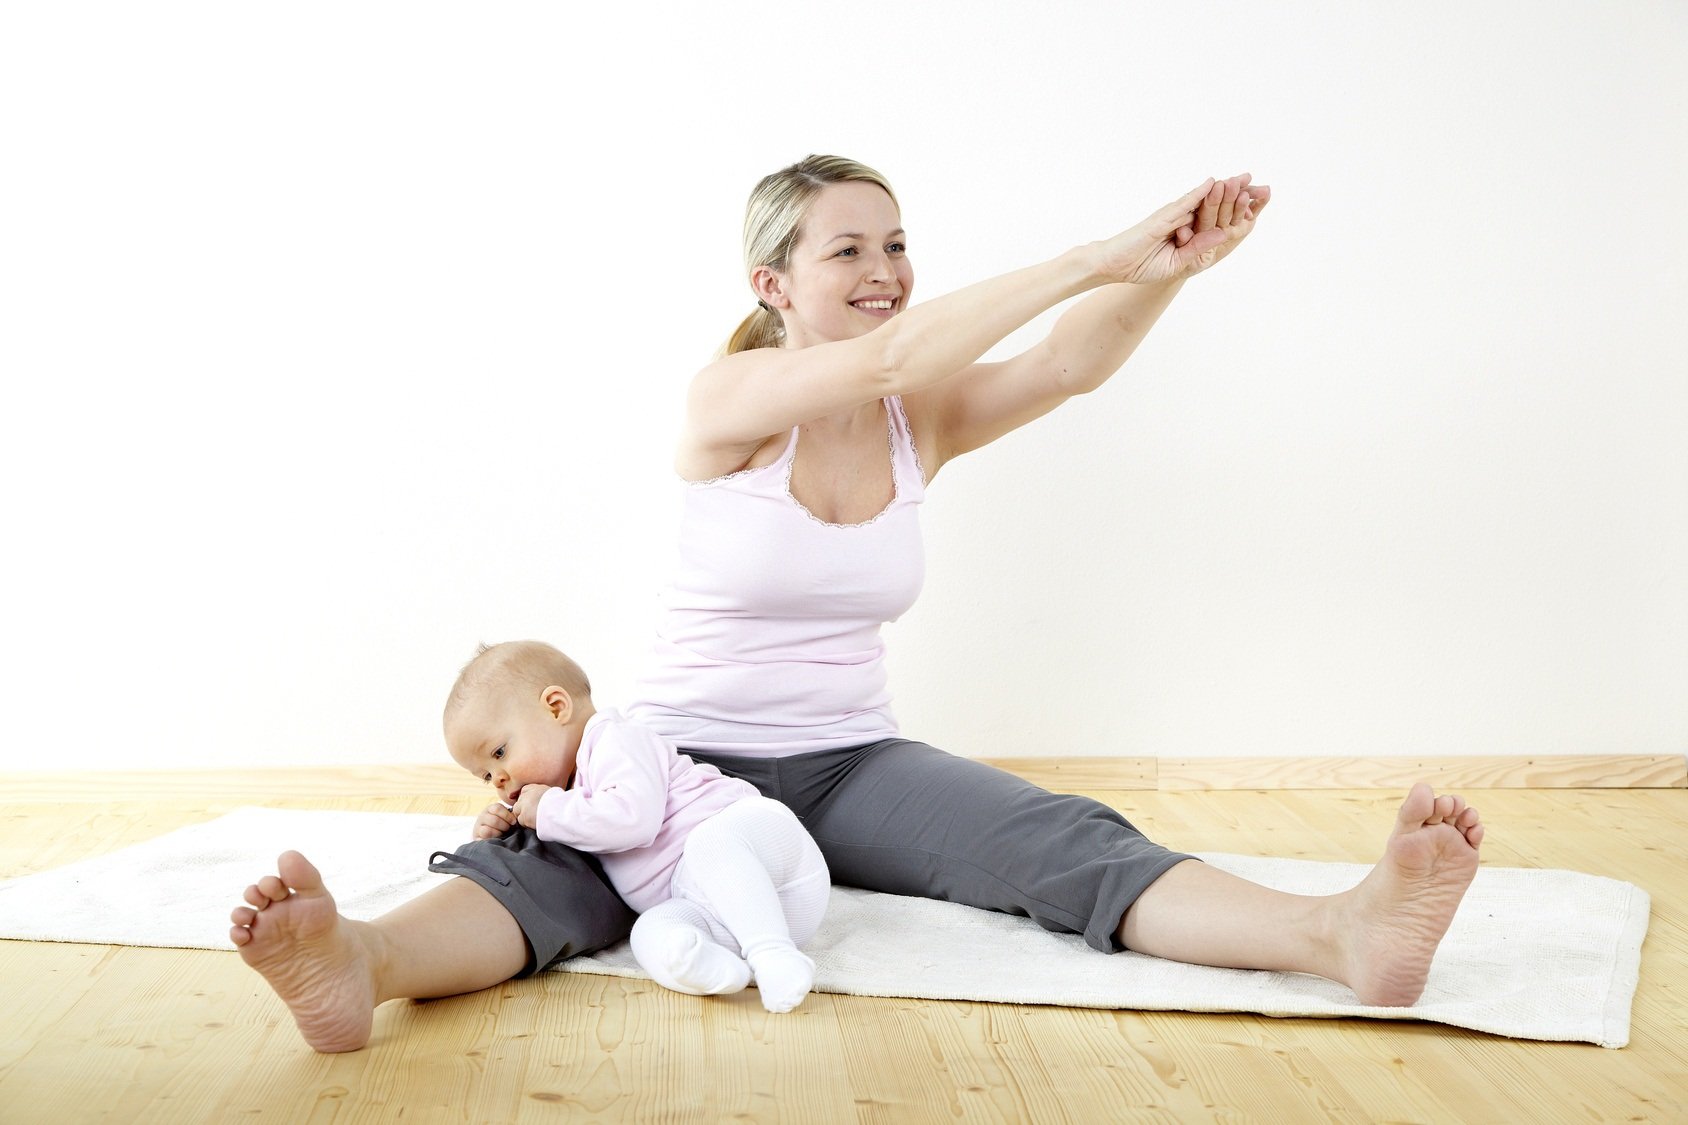 Як схуднути після пологів годуючій мамі, харчування і вправи